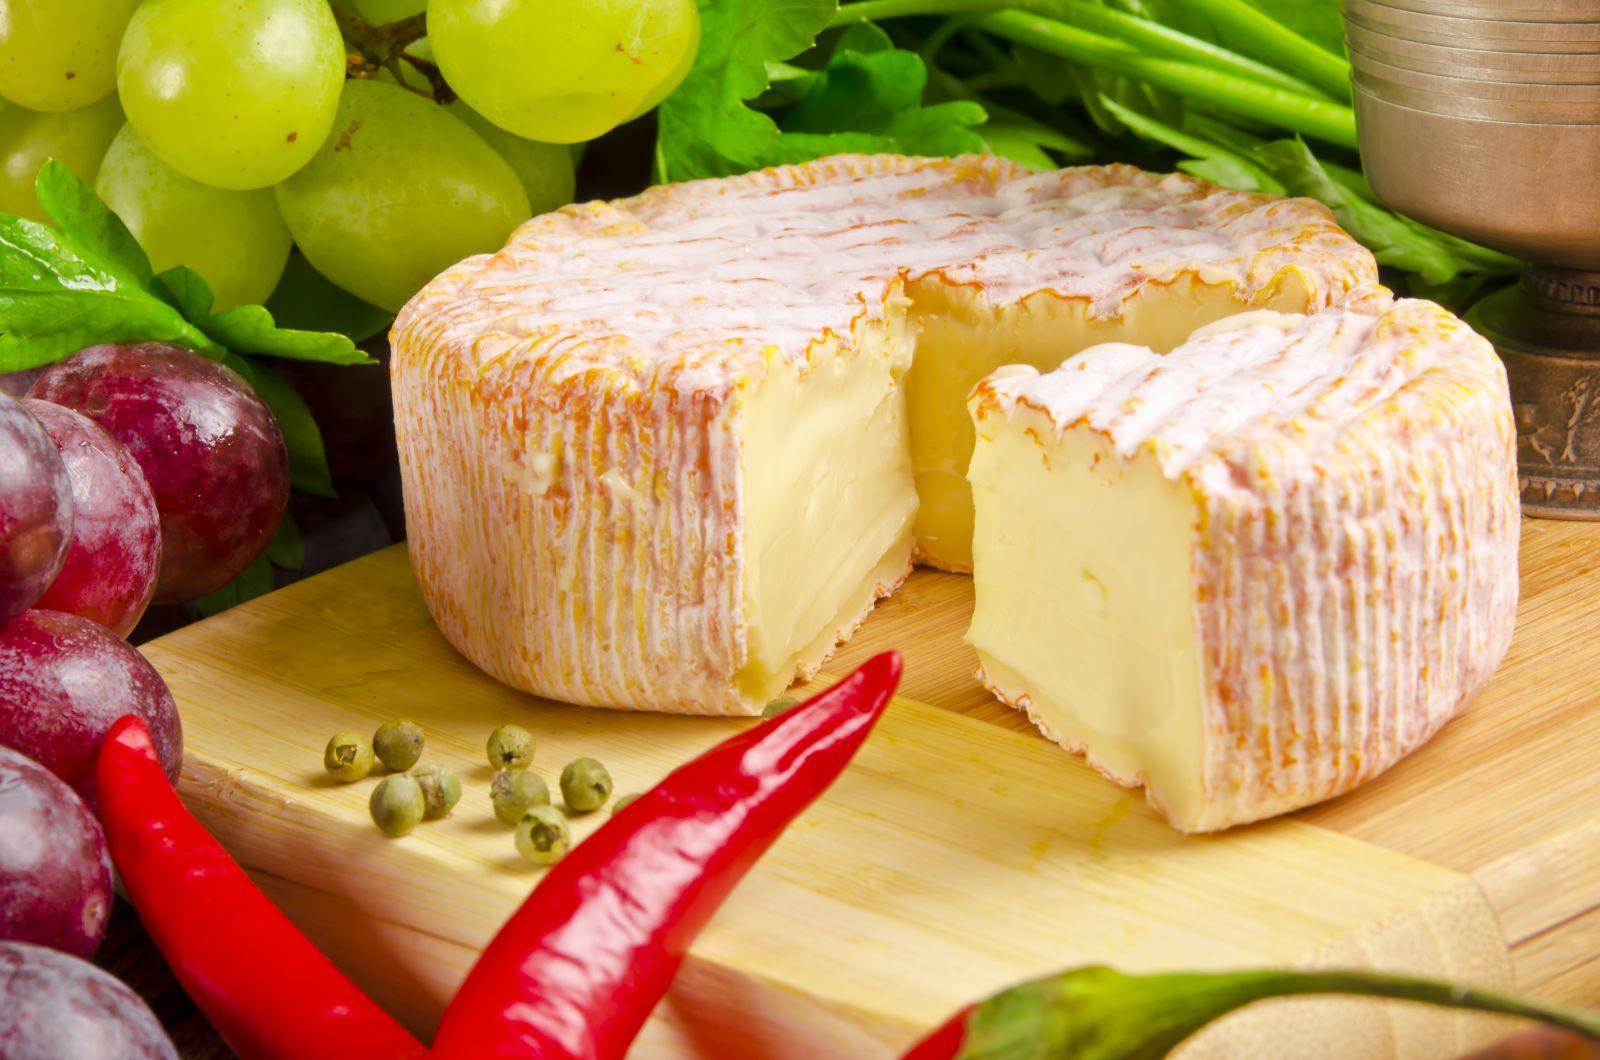 Нормандия известна мягким сыром с белой плесенью - камамберой